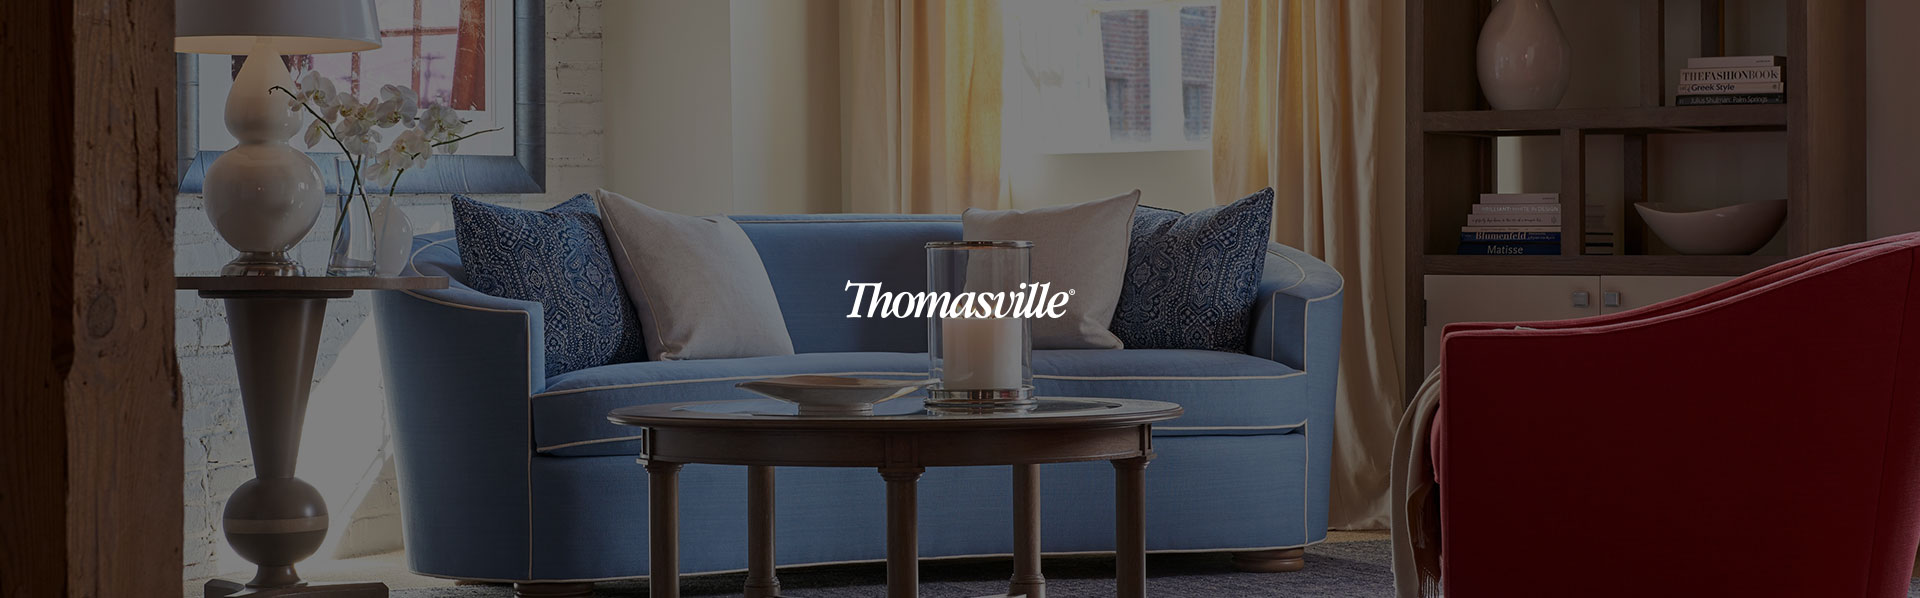 彩投网app美凯龙Thomasville高端美式家具